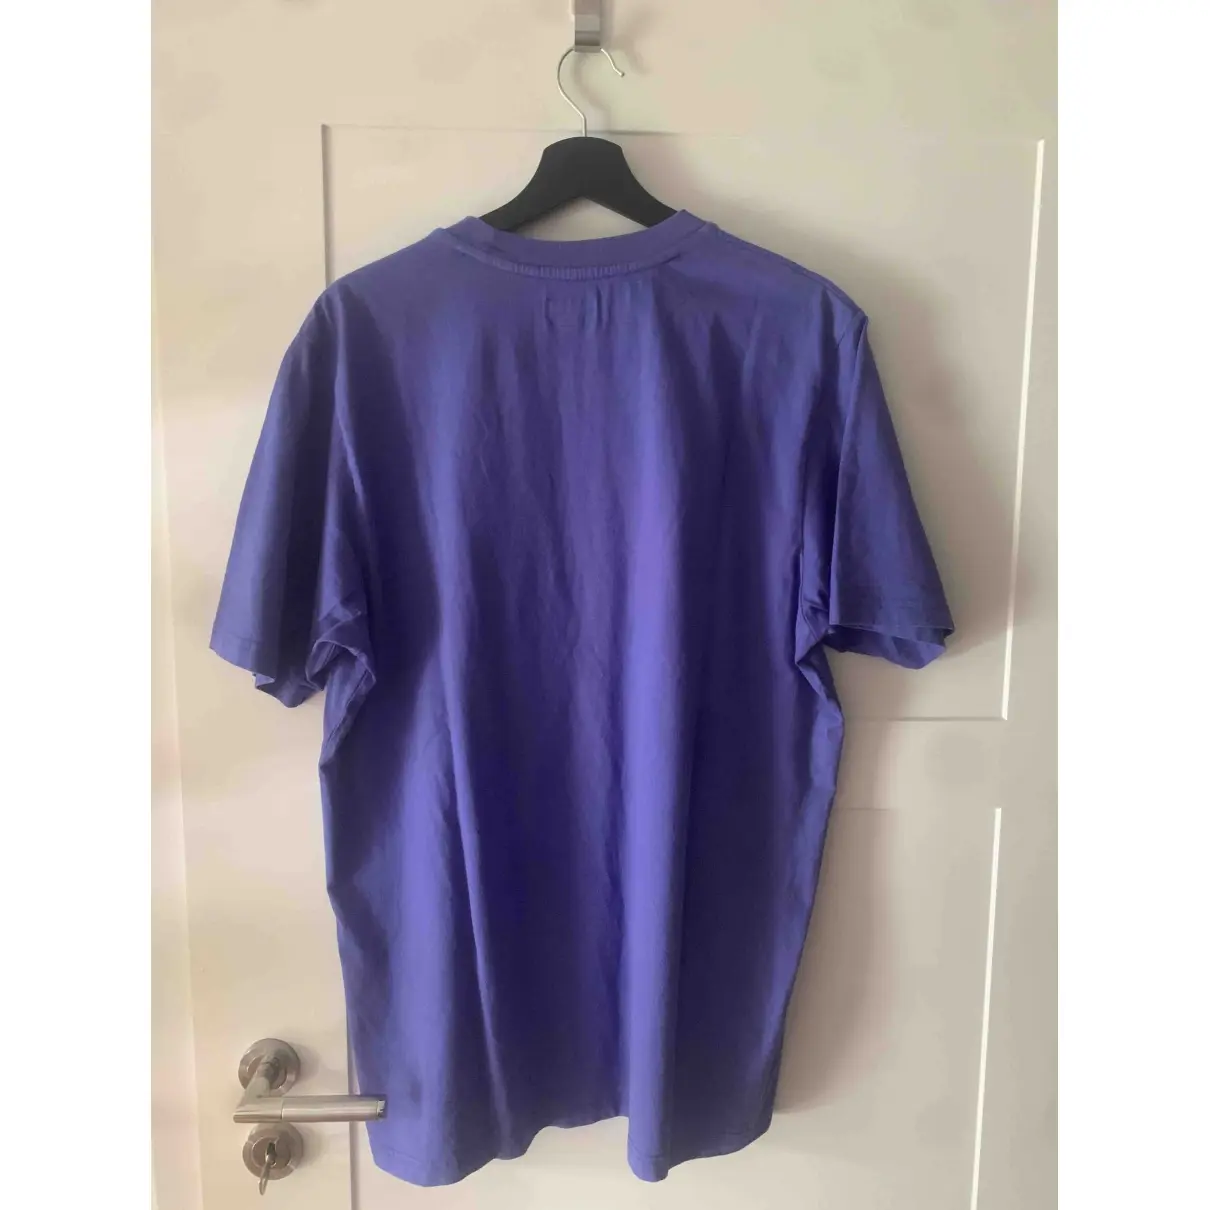 Buy Supreme Purple Cotton T-shirt online